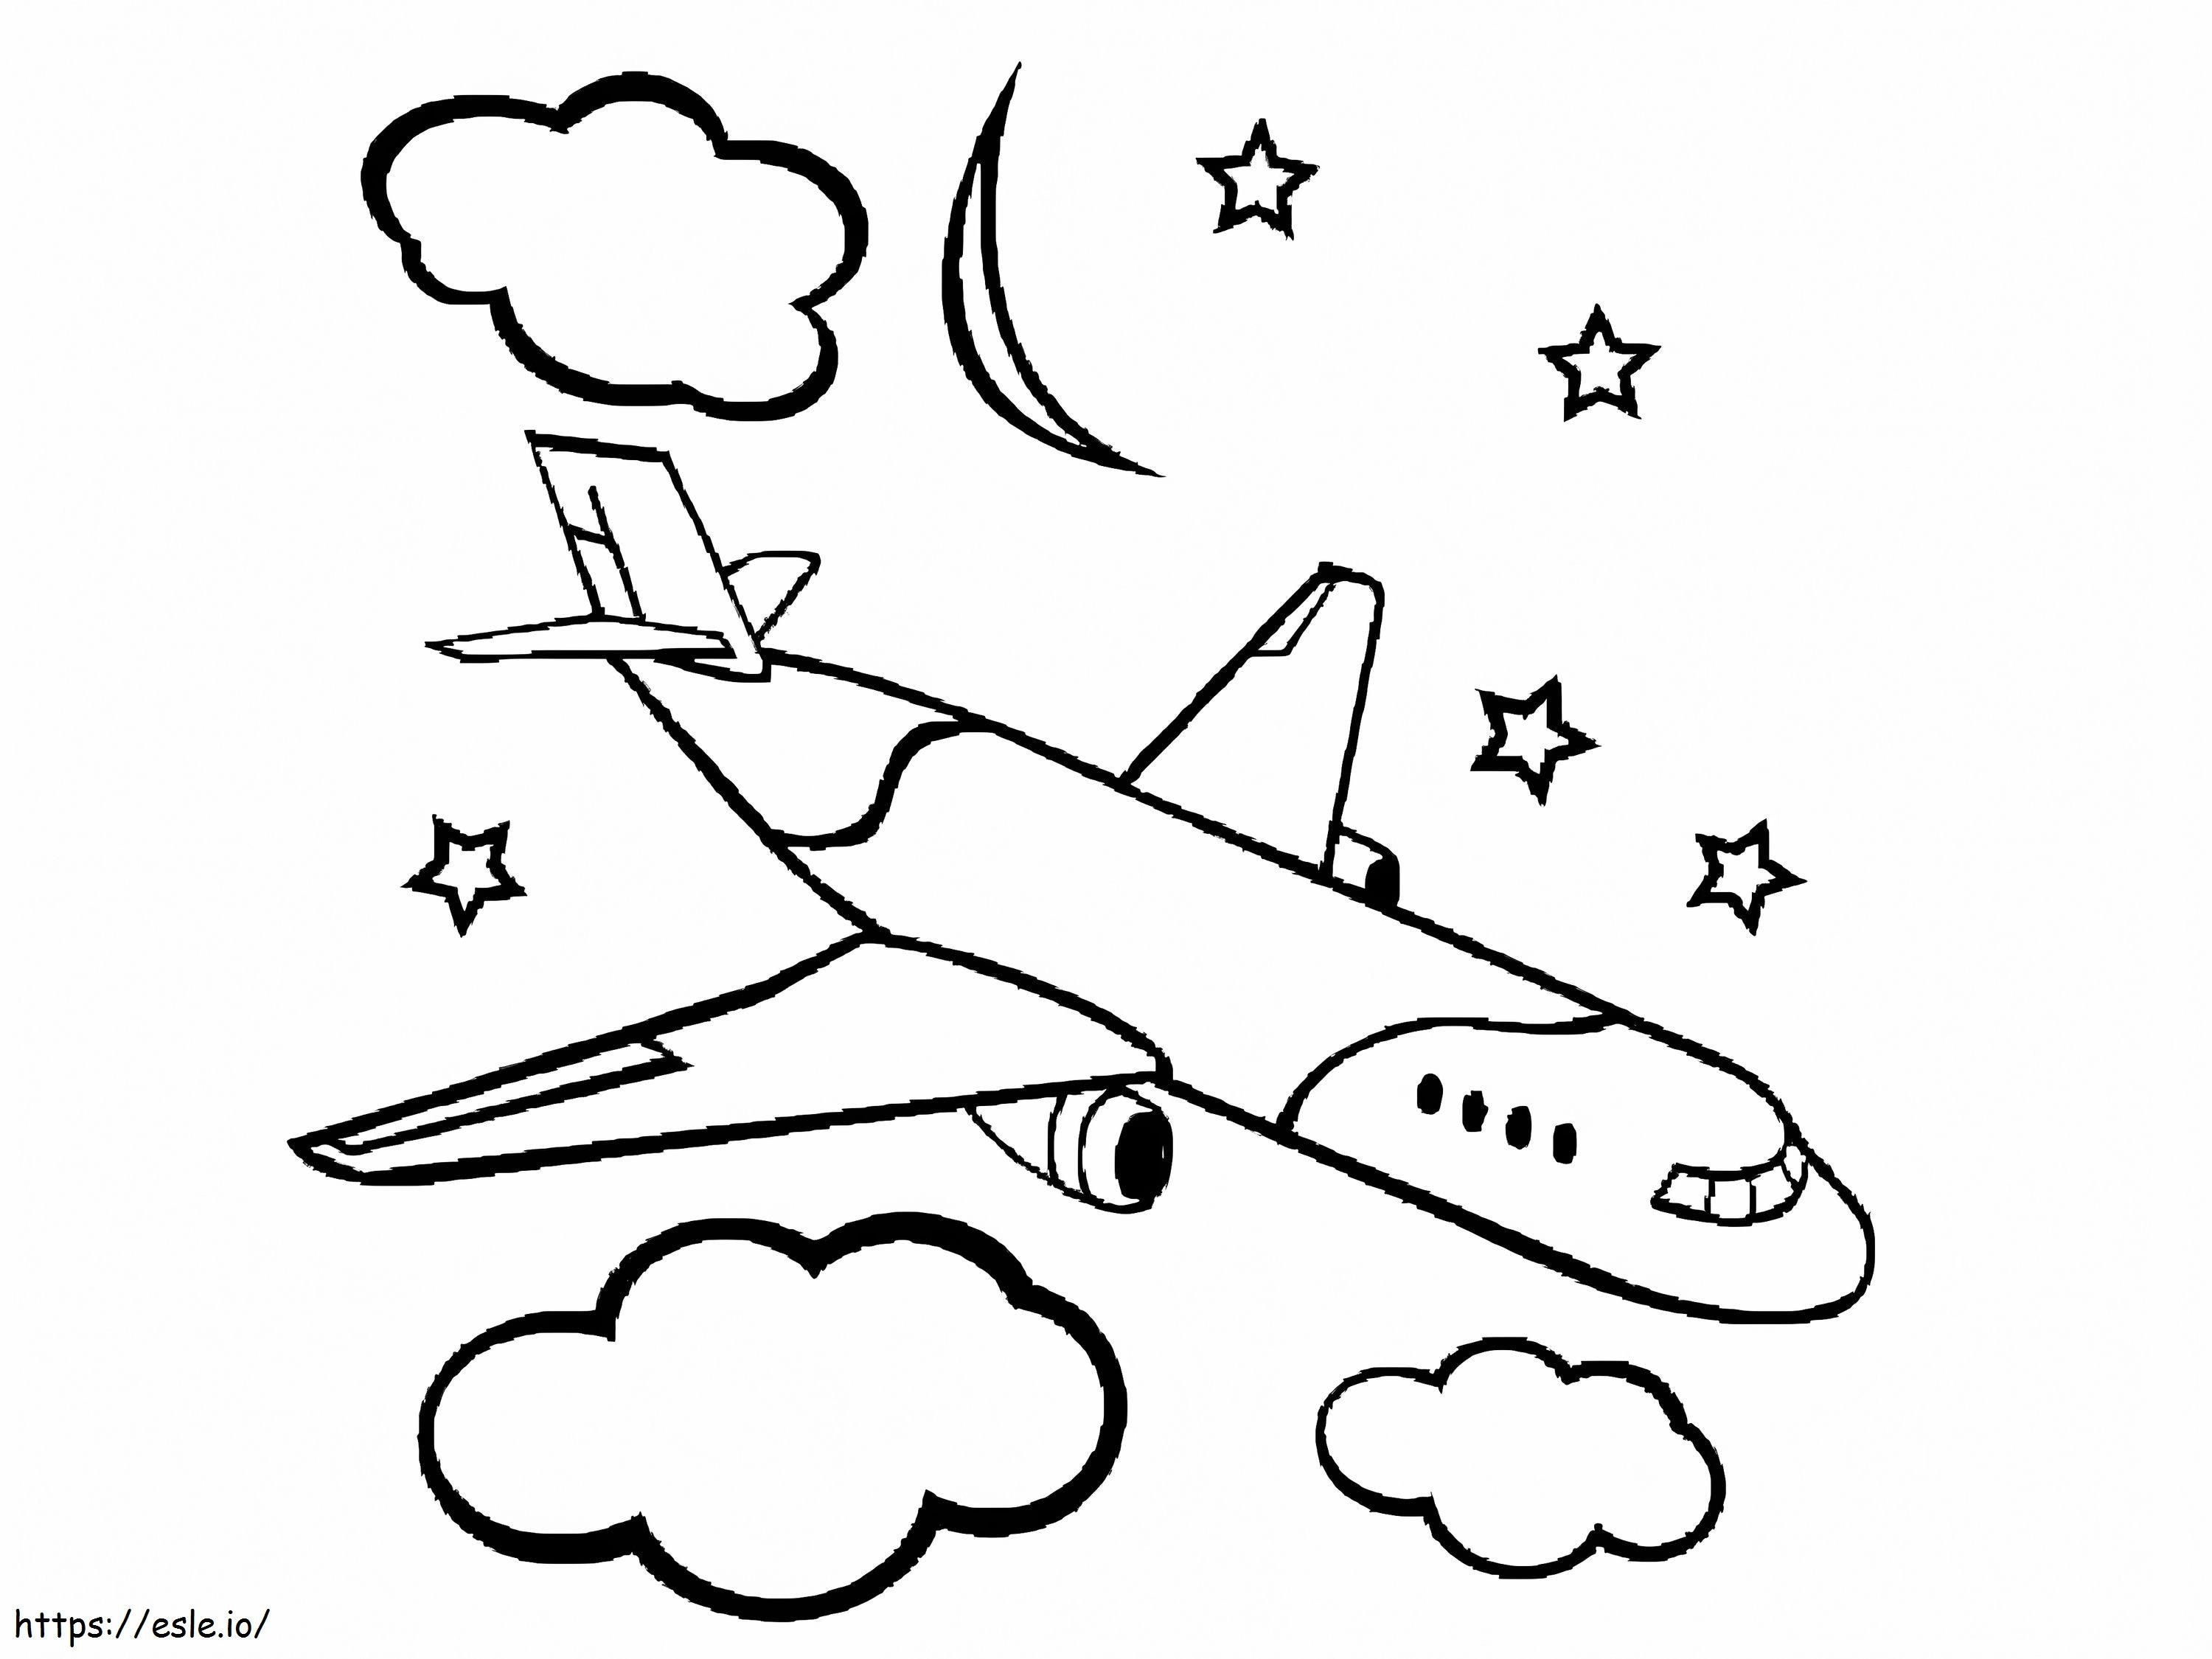 Flugzeug mit Sternen und Wolken ausmalbilder